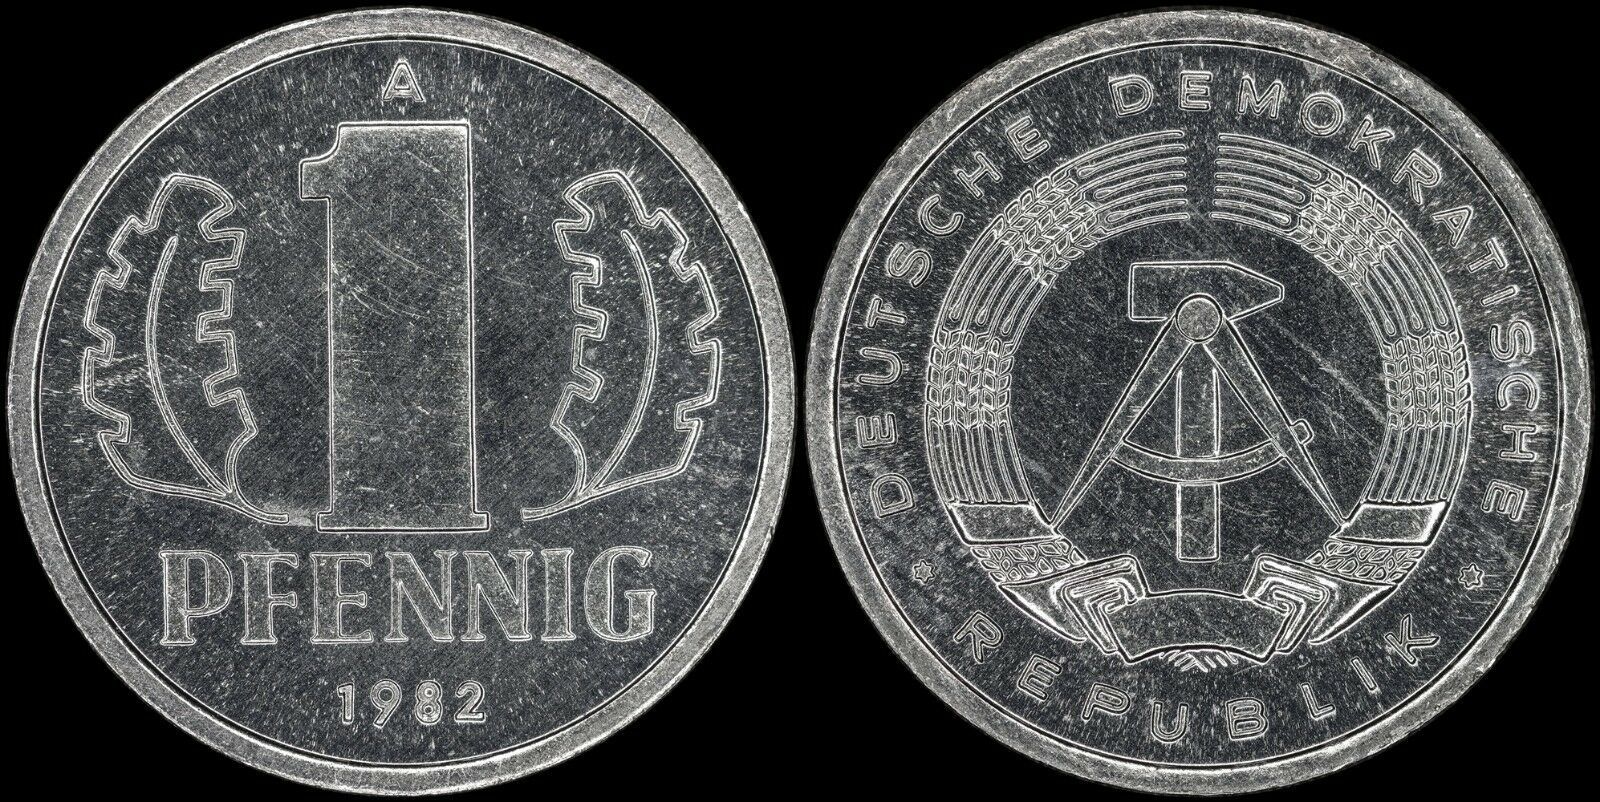 German Democratic Republic 1 Pfennig 1982-a (prooflike) *rare Export-quality*